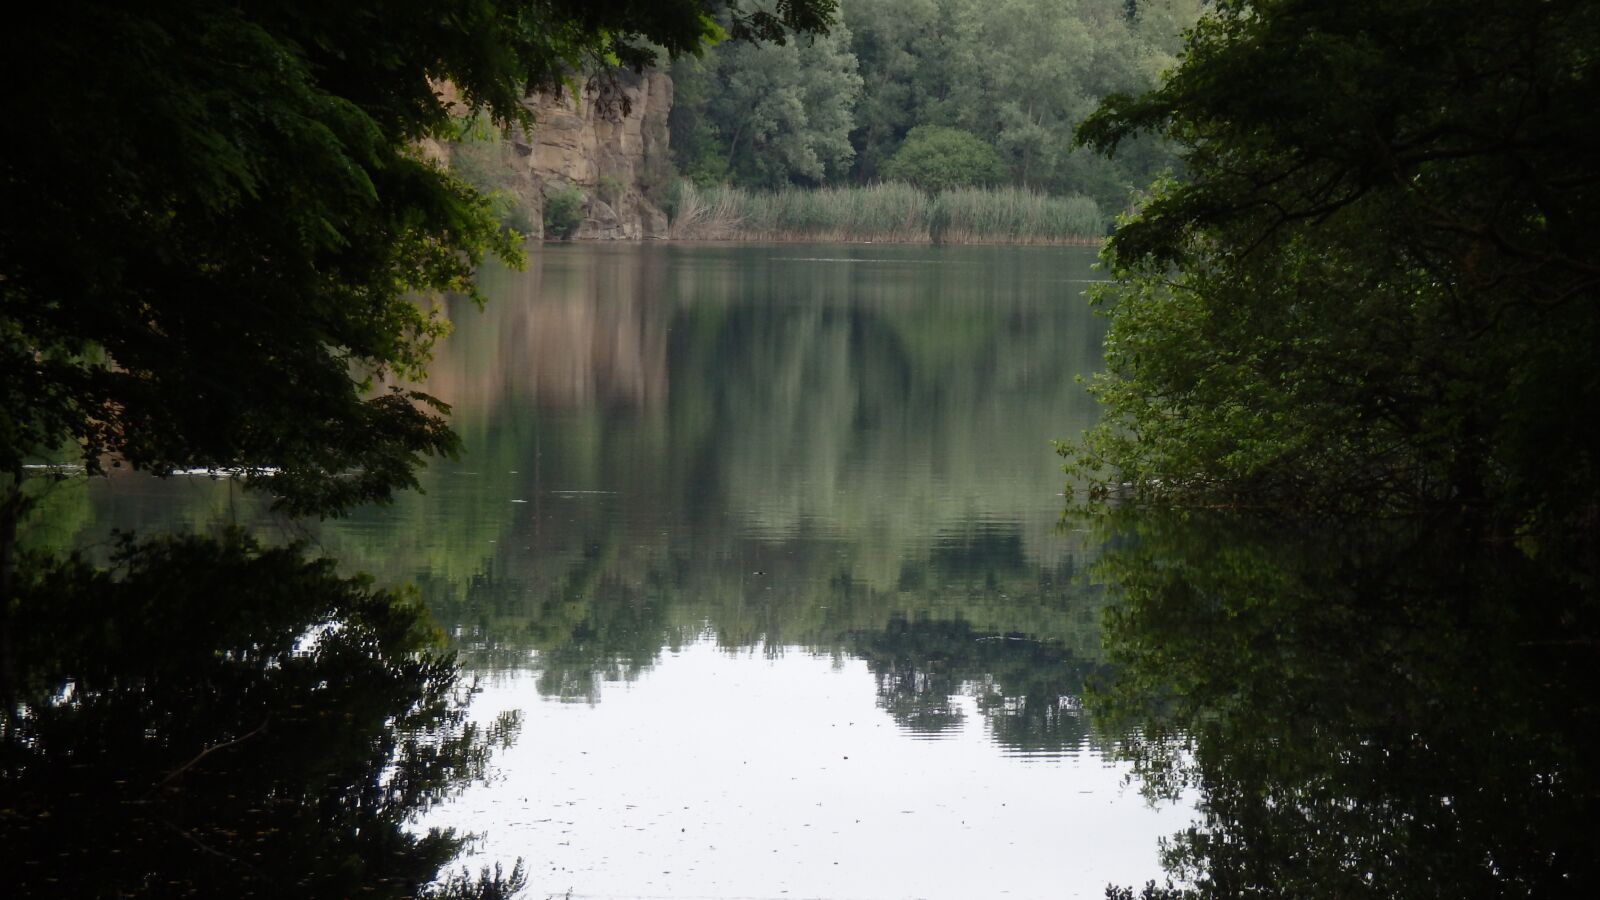 Olympus TG-835 sample photo. Nature, lake, landscape photography